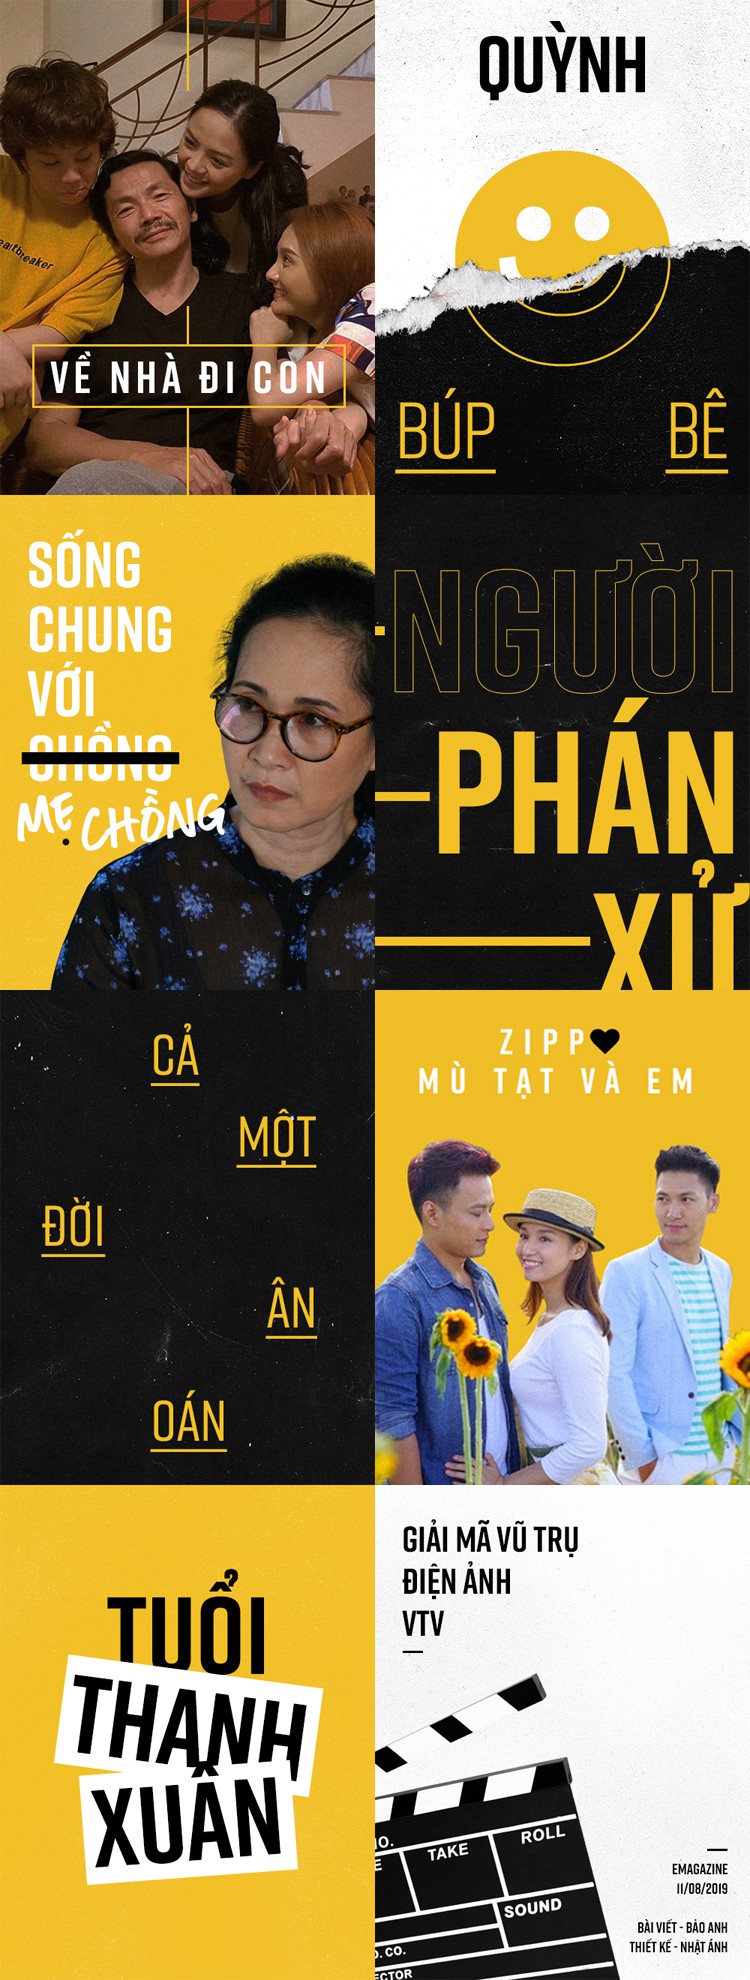 Phim truyền hình Việt: Các bộ phim truyền hình Việt thường có nội dung và cảnh quay đặc sắc, khai thác tình huống nhân văn, gia đình, giữa cộng đồng và cái tôi. Qua từng tập phim, khán giả có được những kinh nghiệm tuyệt vời. Hãy xem ảnh liên quan để trải nghiệm thêm về những bộ phim tuyệt vời này.